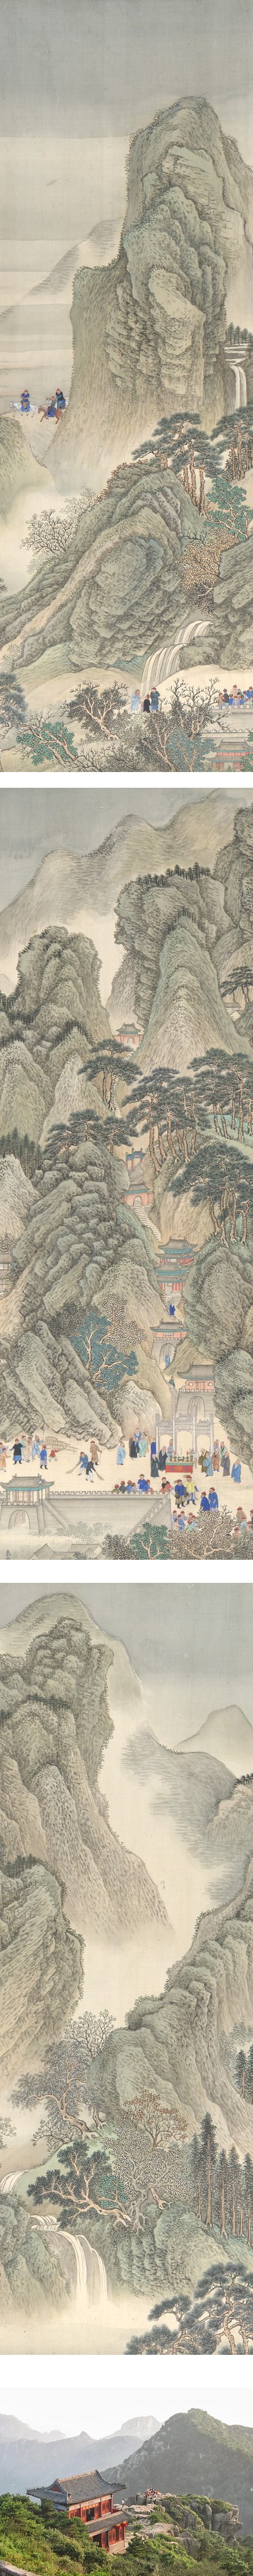 The Kangxi Emperor's Southern Inspection Tour, Scroll Three: Ji'nan to Mount Tai, (details), Wang Hui